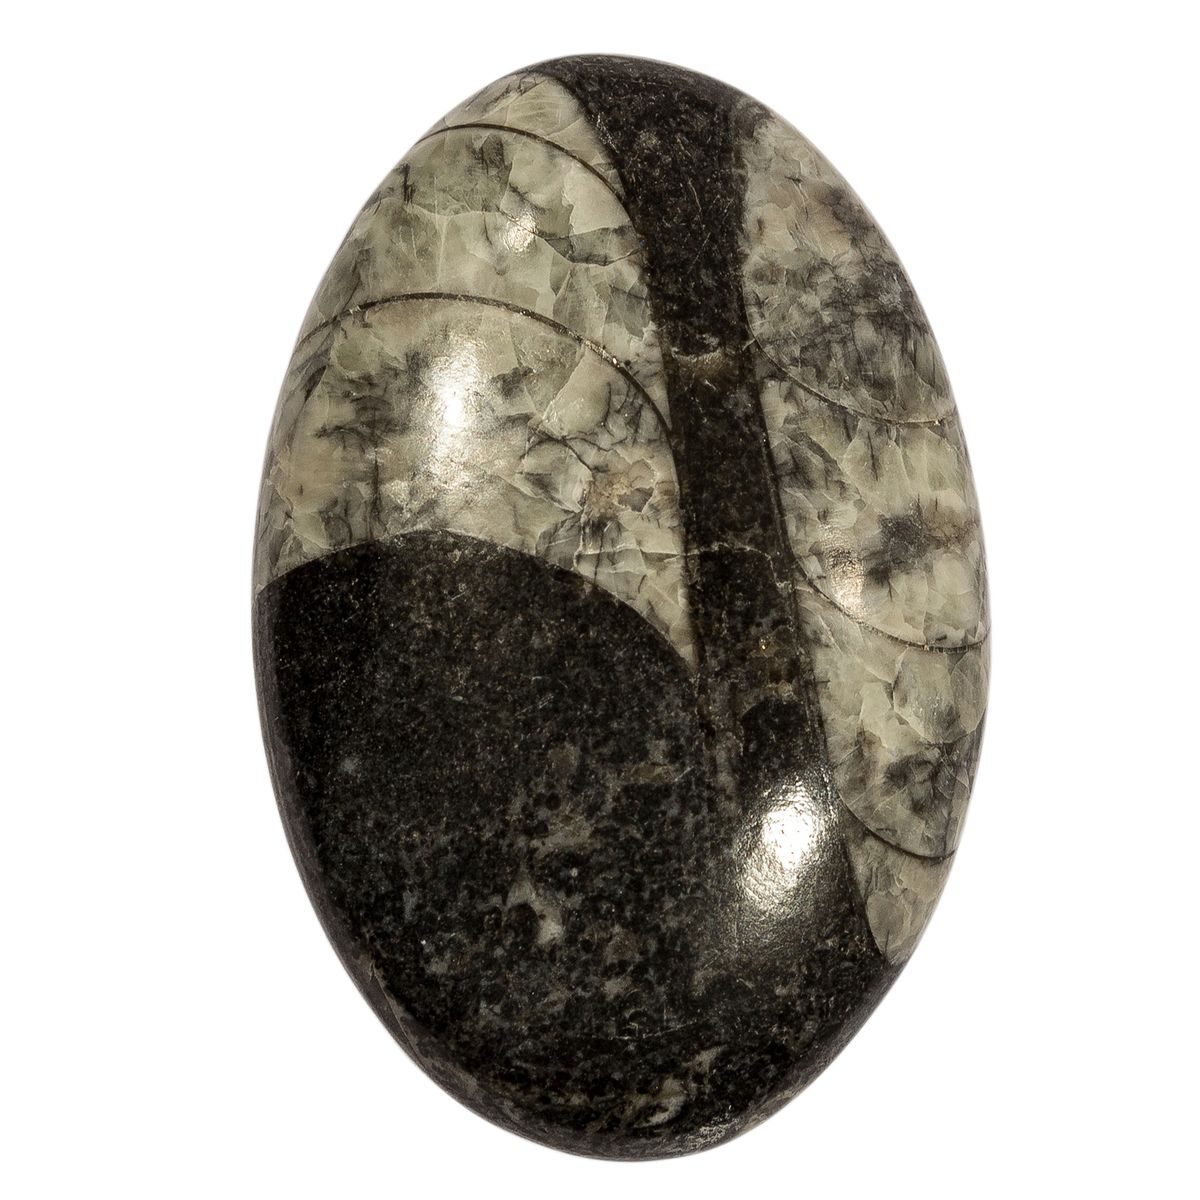 11 stone. Ортоцерас камень. Черно серый камень для весов. Ортоцерас. Orthoceras.